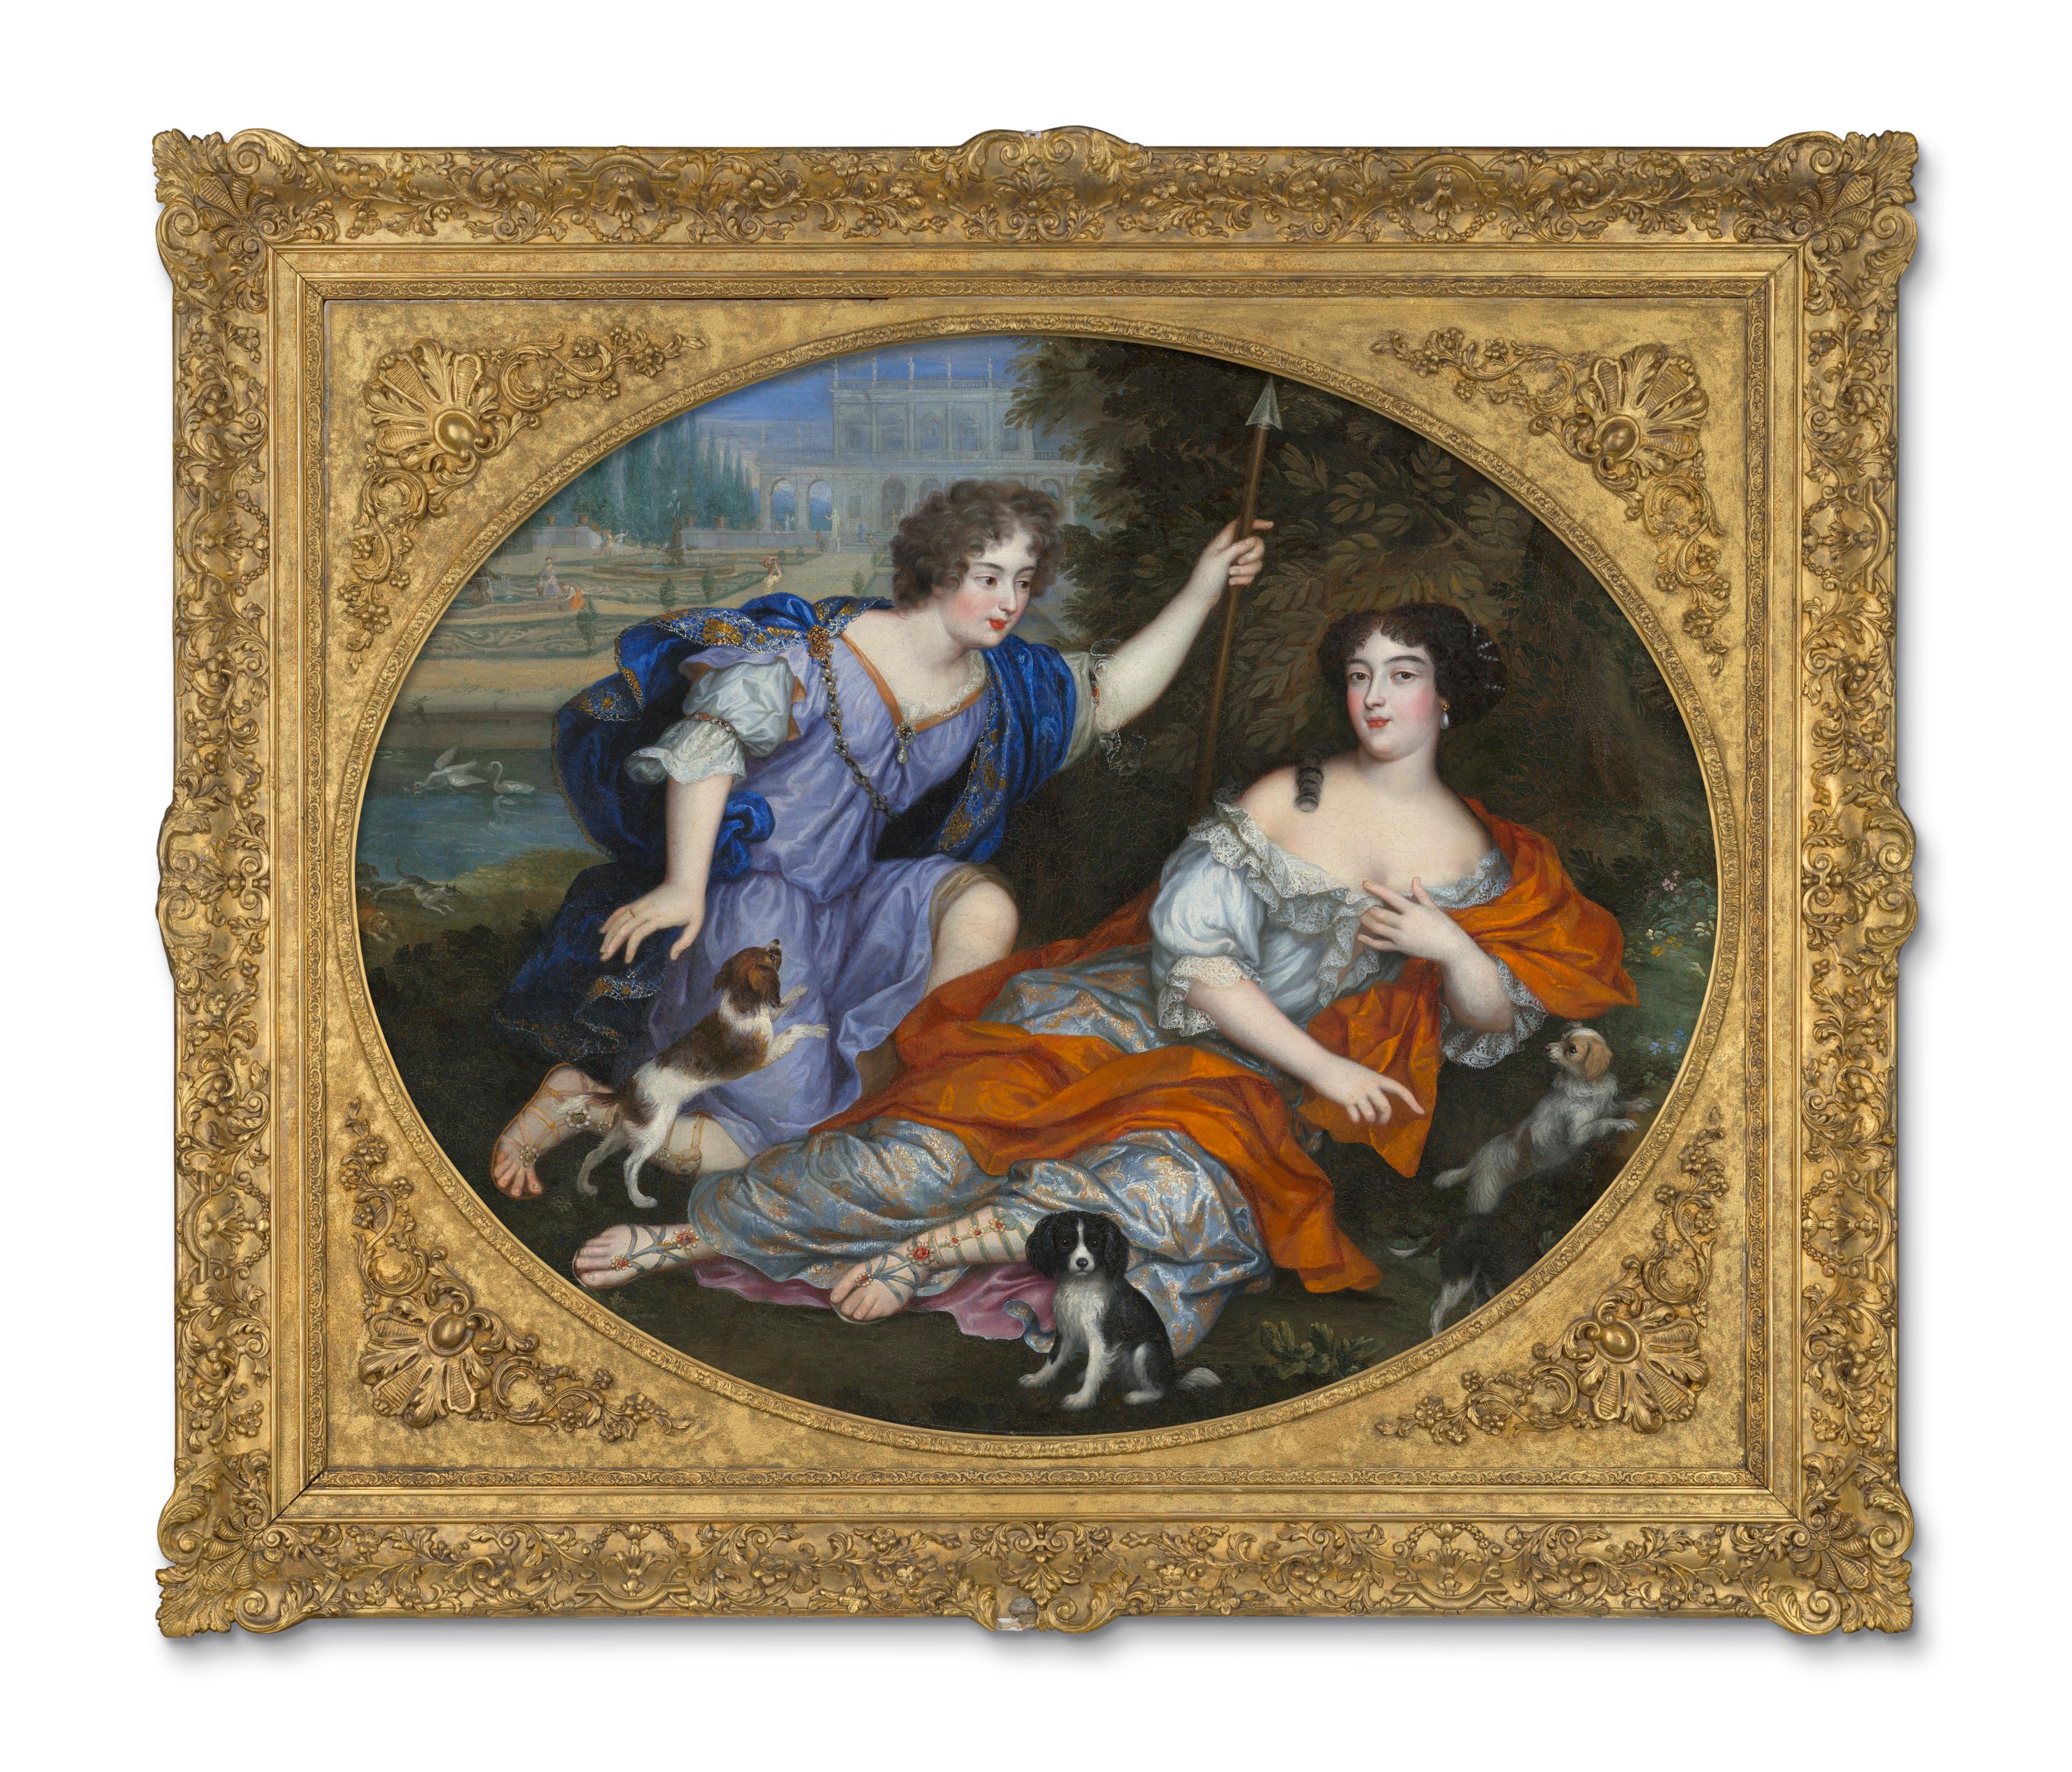 Henri Gascar Portrait Painting - Venus and Adonis